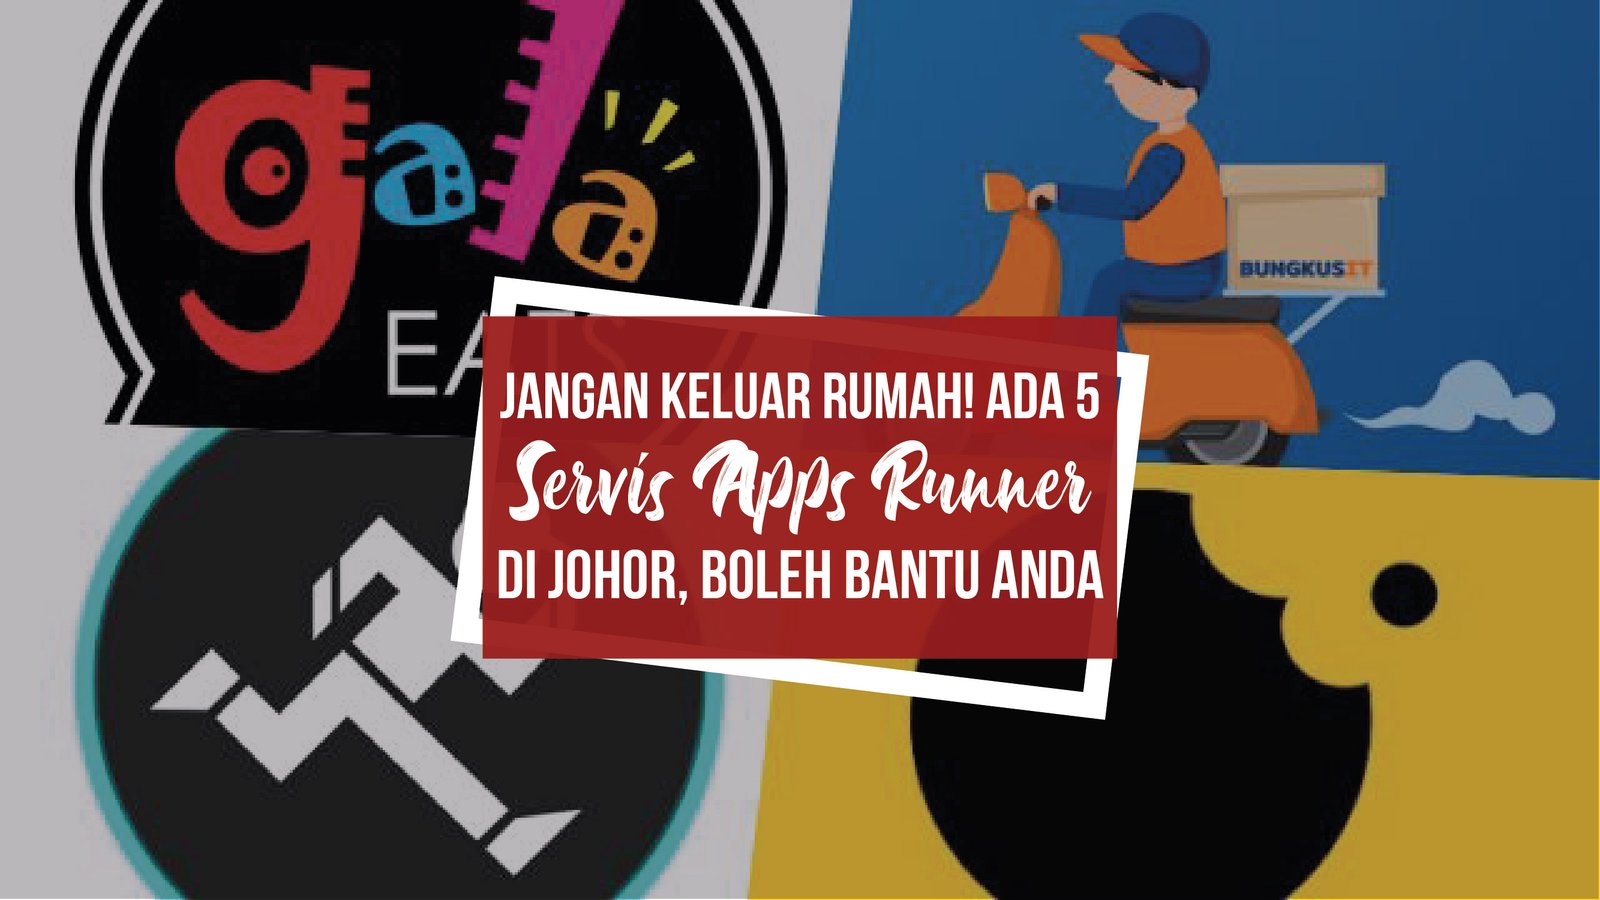 Jangan keluar rumah! 5 servis apps runner di Johor, boleh bantu anda.